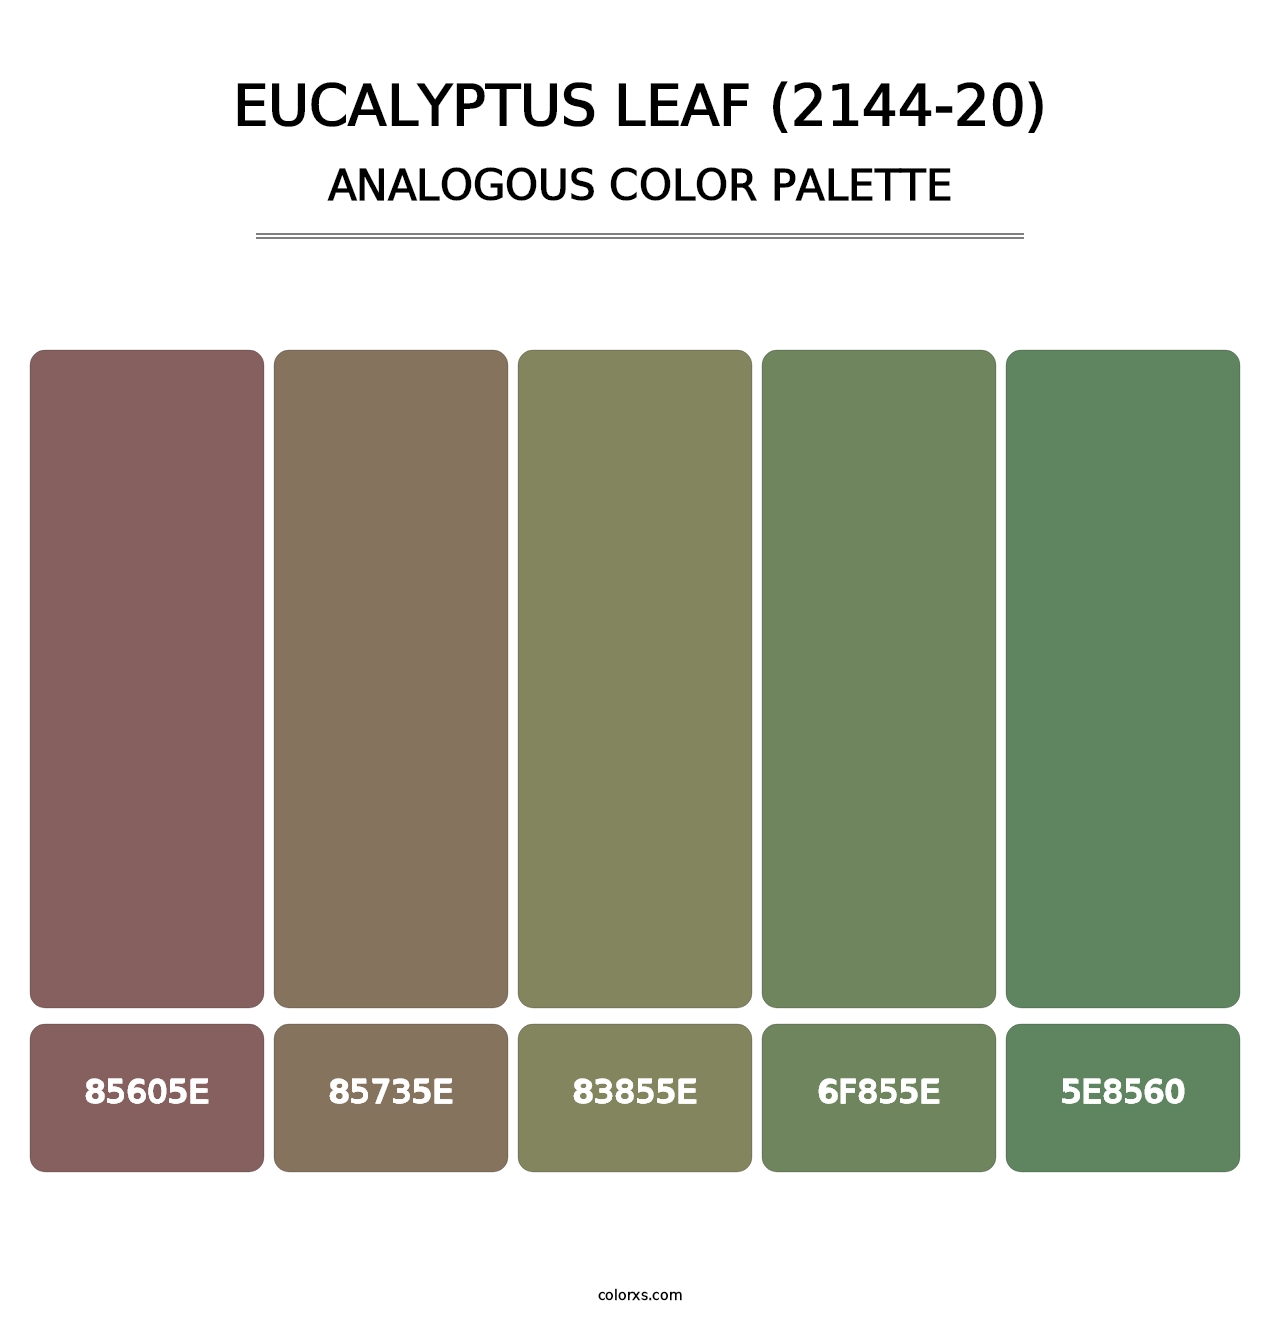 Eucalyptus Leaf (2144-20) - Analogous Color Palette